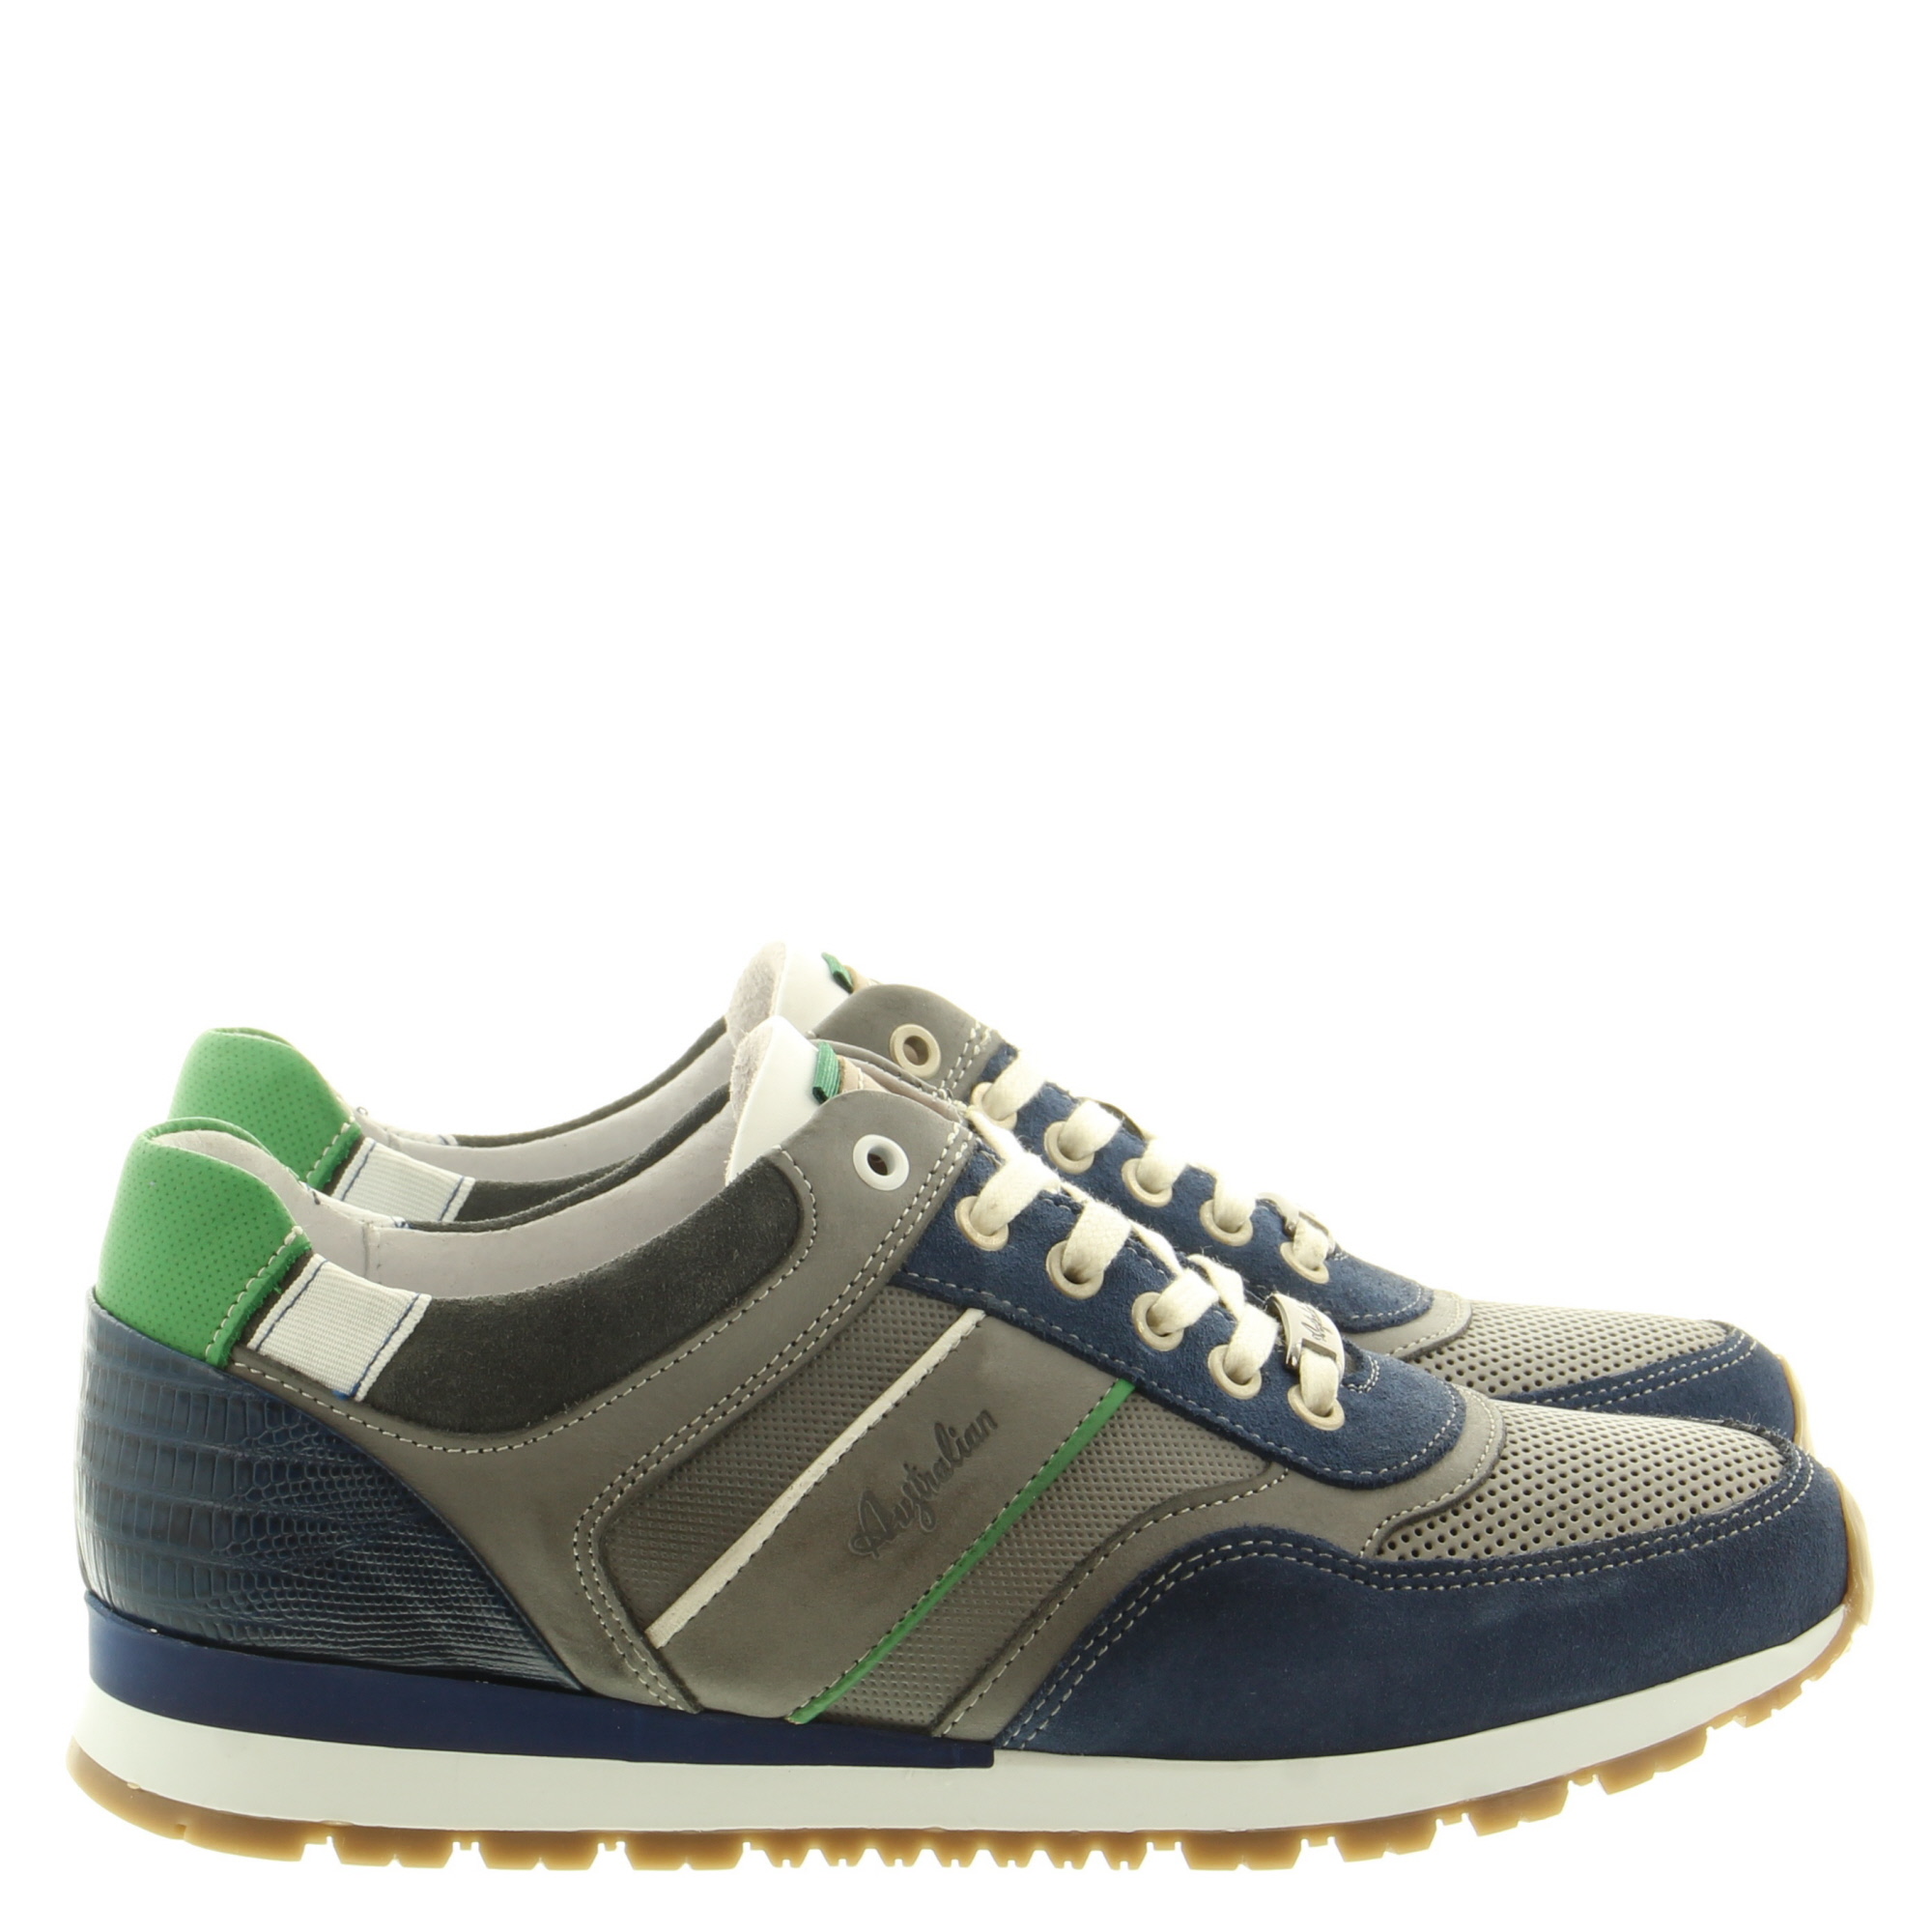 Australian Footwear Navarone 15.1504.03 PXK Grey-Blue-Green